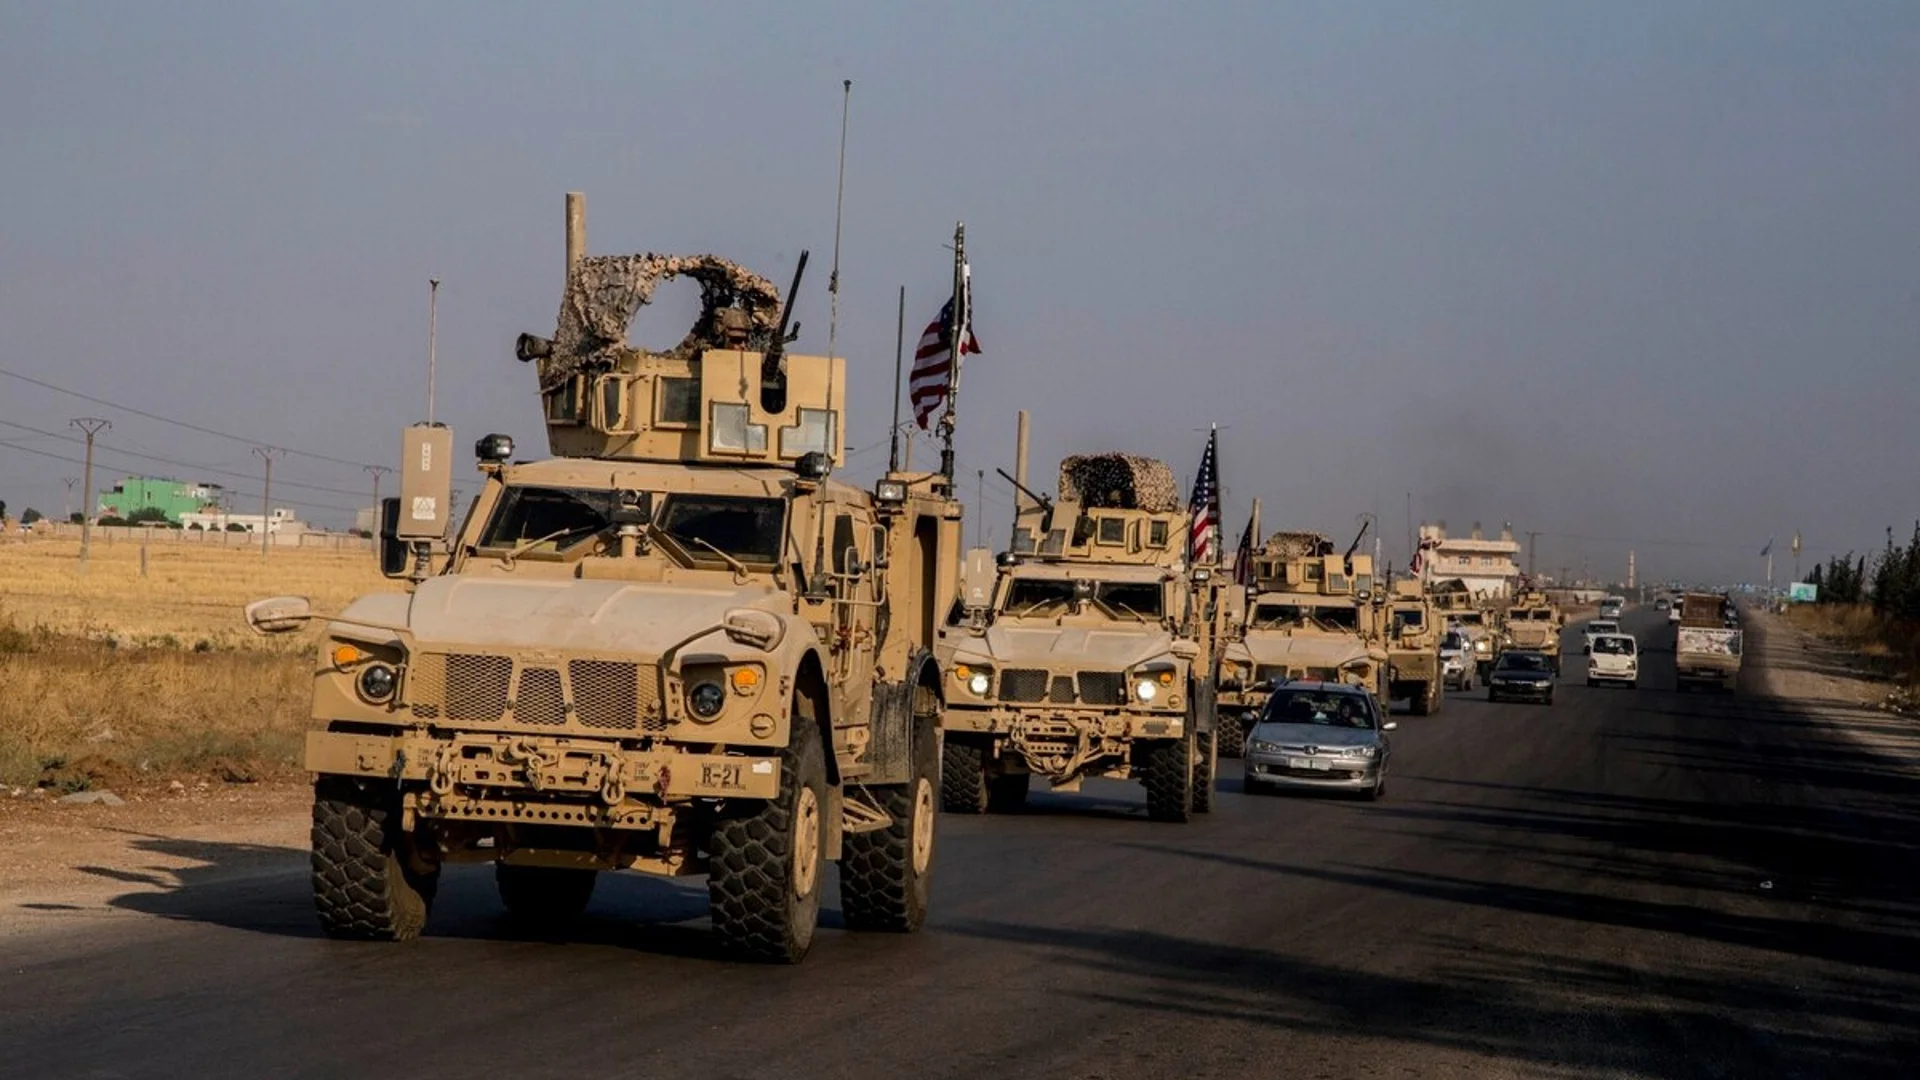 САЩ излизат от Сирия: Катастрофата "Ислямска държава" пак е на дневен ред